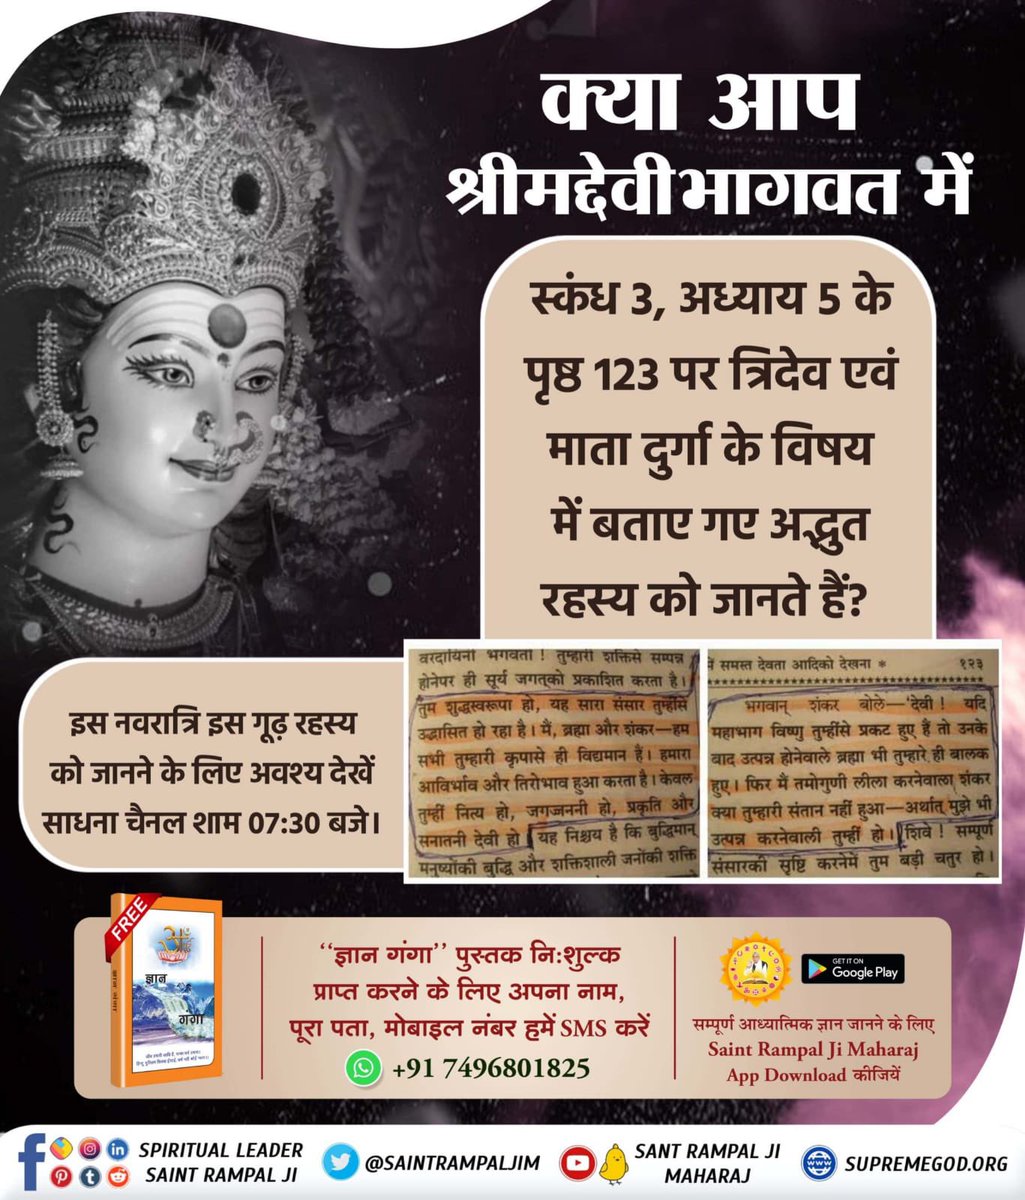 #माँ_को_खुश_करनेकेलिए पढ़ें ज्ञान गंगा इस नवरात्रि पर अवश्य जानिए कि देवी दुर्गा को त्रिदेव जननी क्यों कहा जाता है? जानने के लिए अवश्य पढ़ें ज्ञान गंगा।